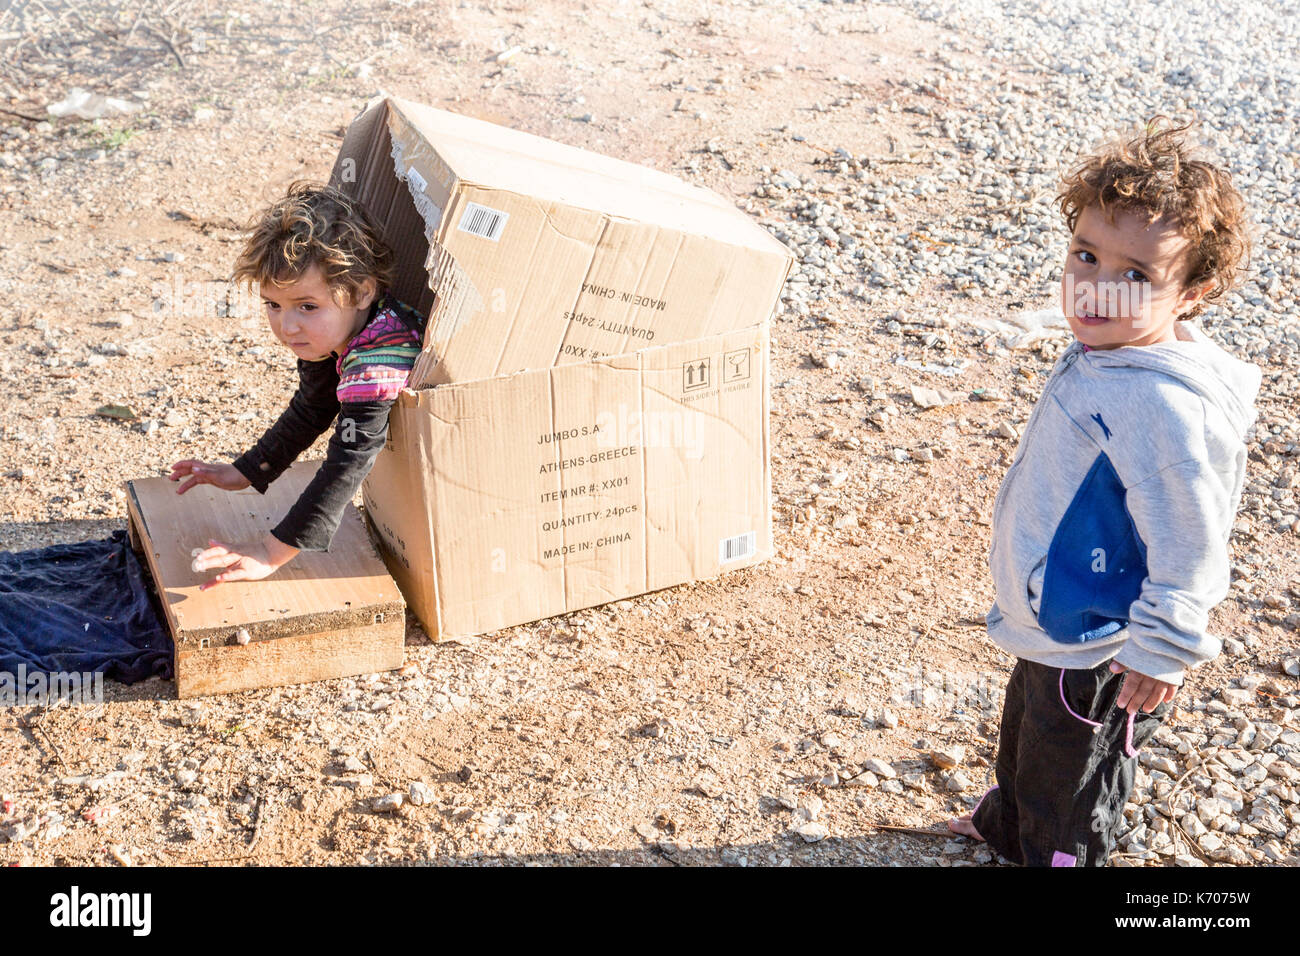 Un enfant joue gaiement dans une boîte en carton sur le sol pierreux de la ritsona camp de réfugiés en grèce comme son collègue regarde la caméra. Banque D'Images